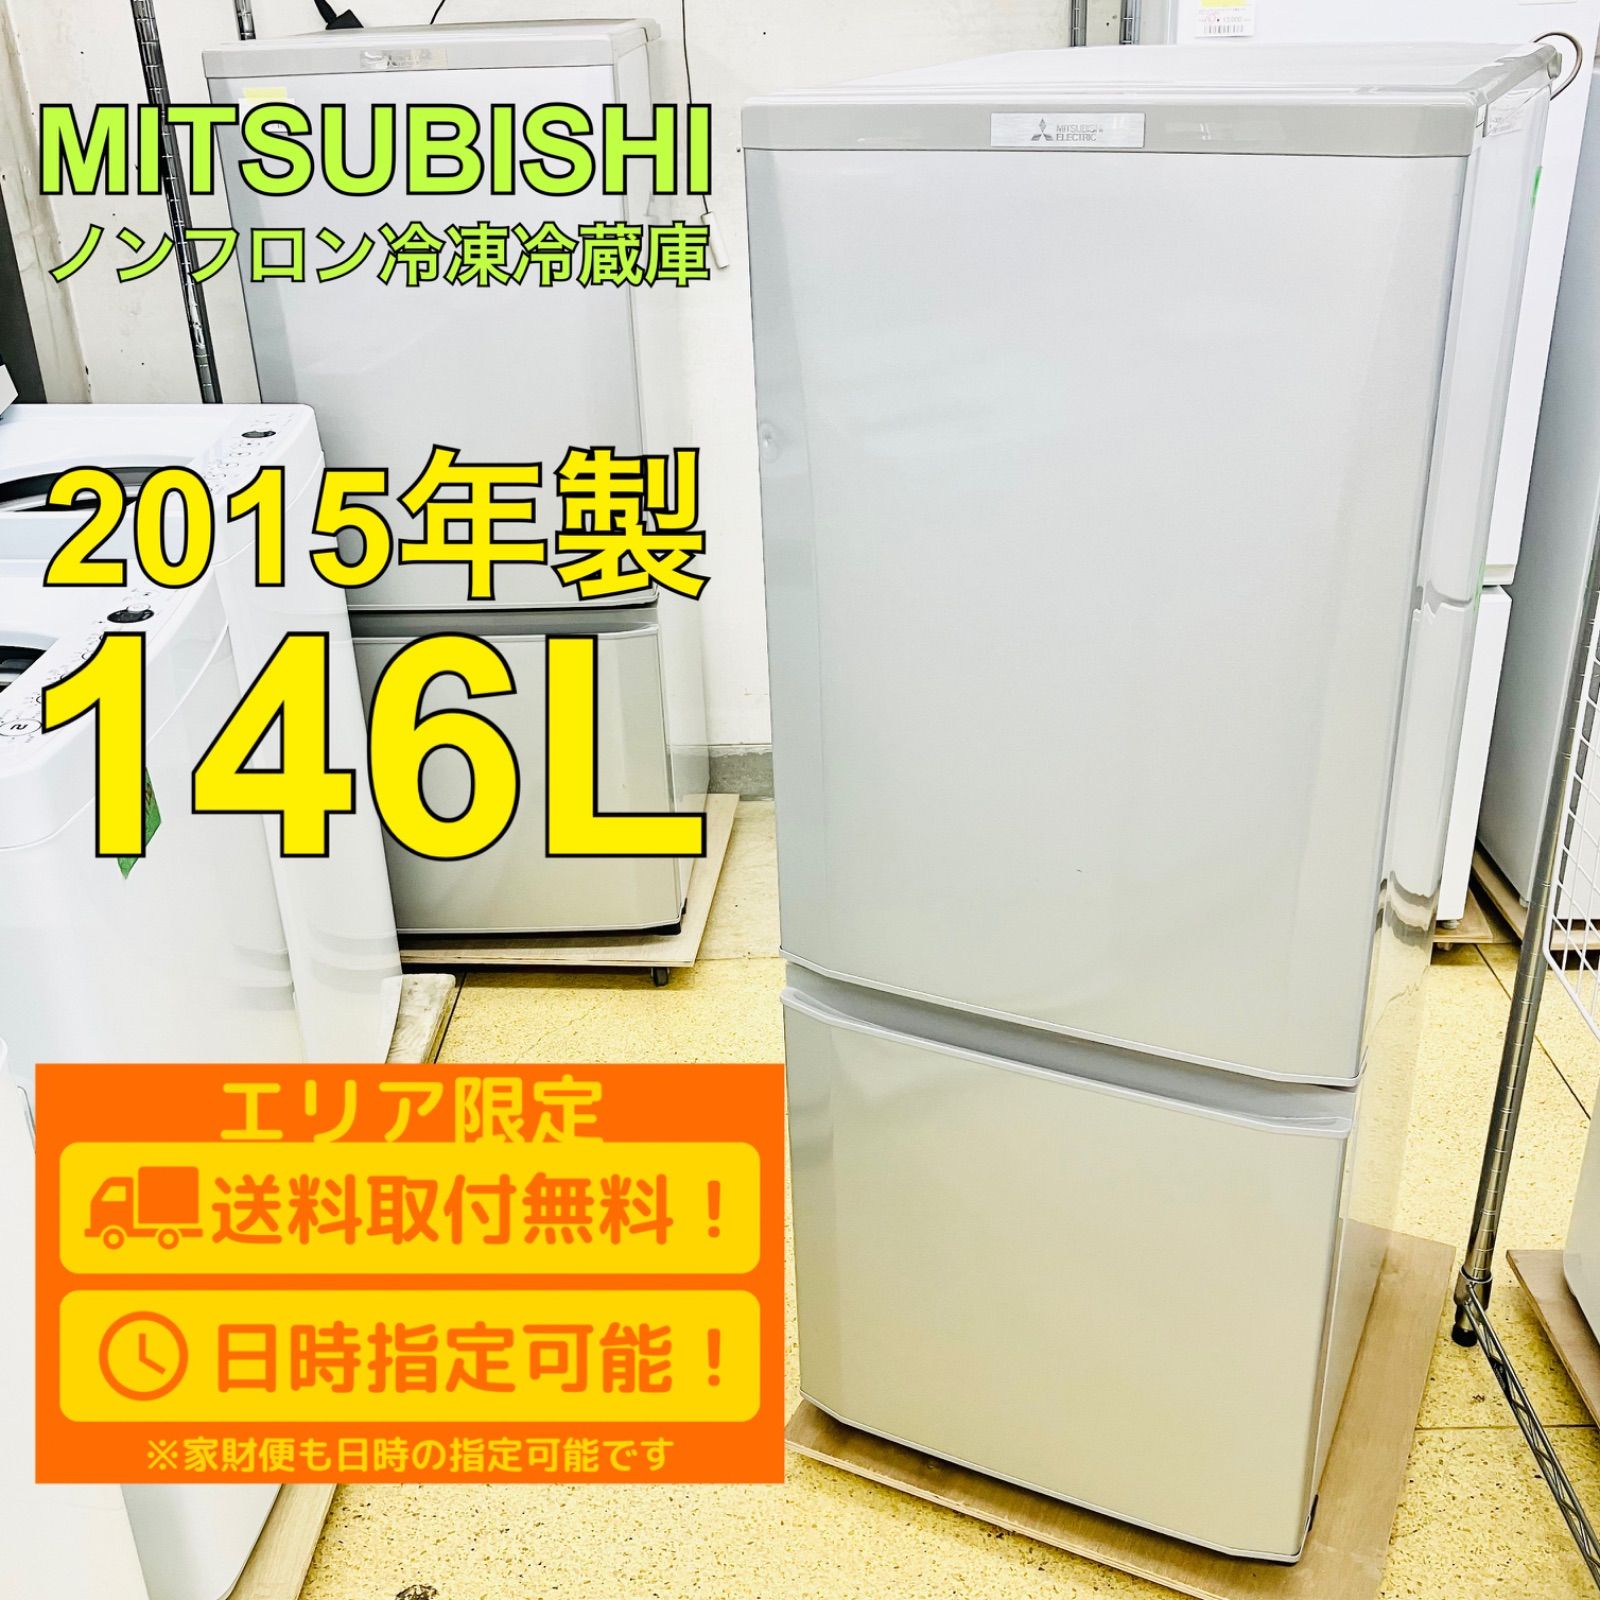 三菱ノンフロン三菱ノンフロン冷凍冷蔵庫 2015年製